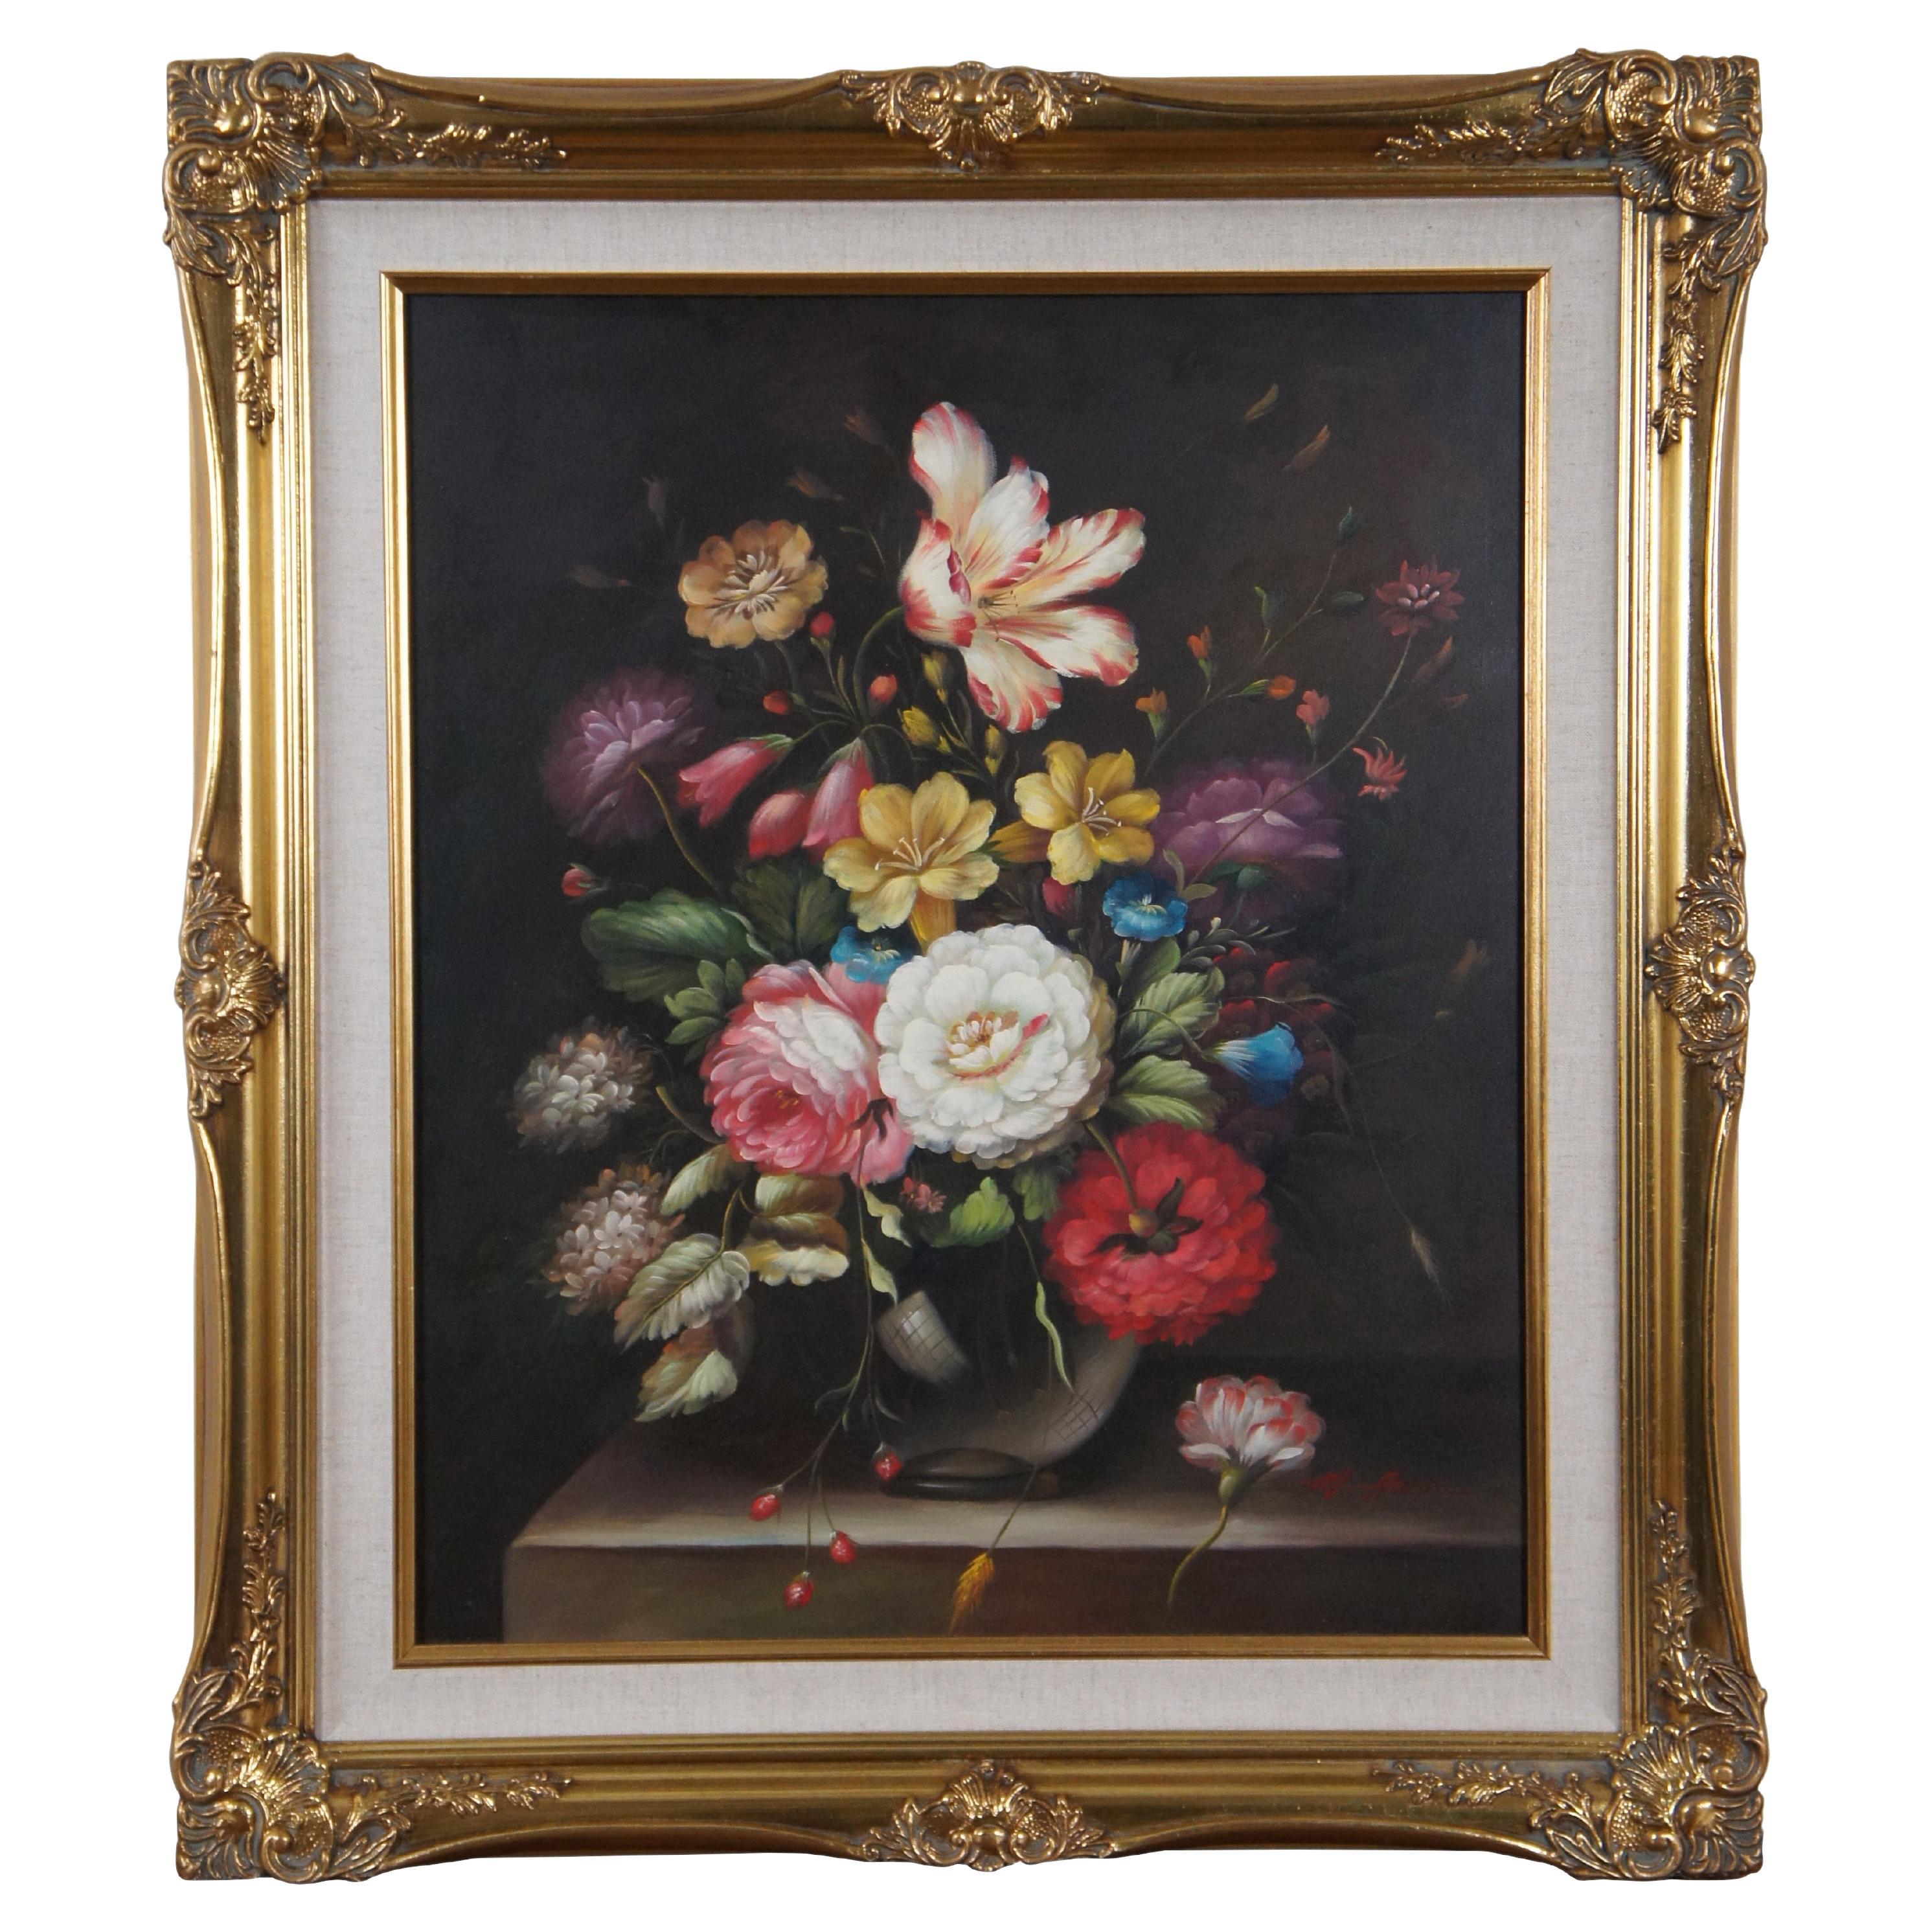 Vintage A&M Floral Botanical Bouquet Still Life Oil Painting on Canvas 31" (peinture à l'huile sur toile)